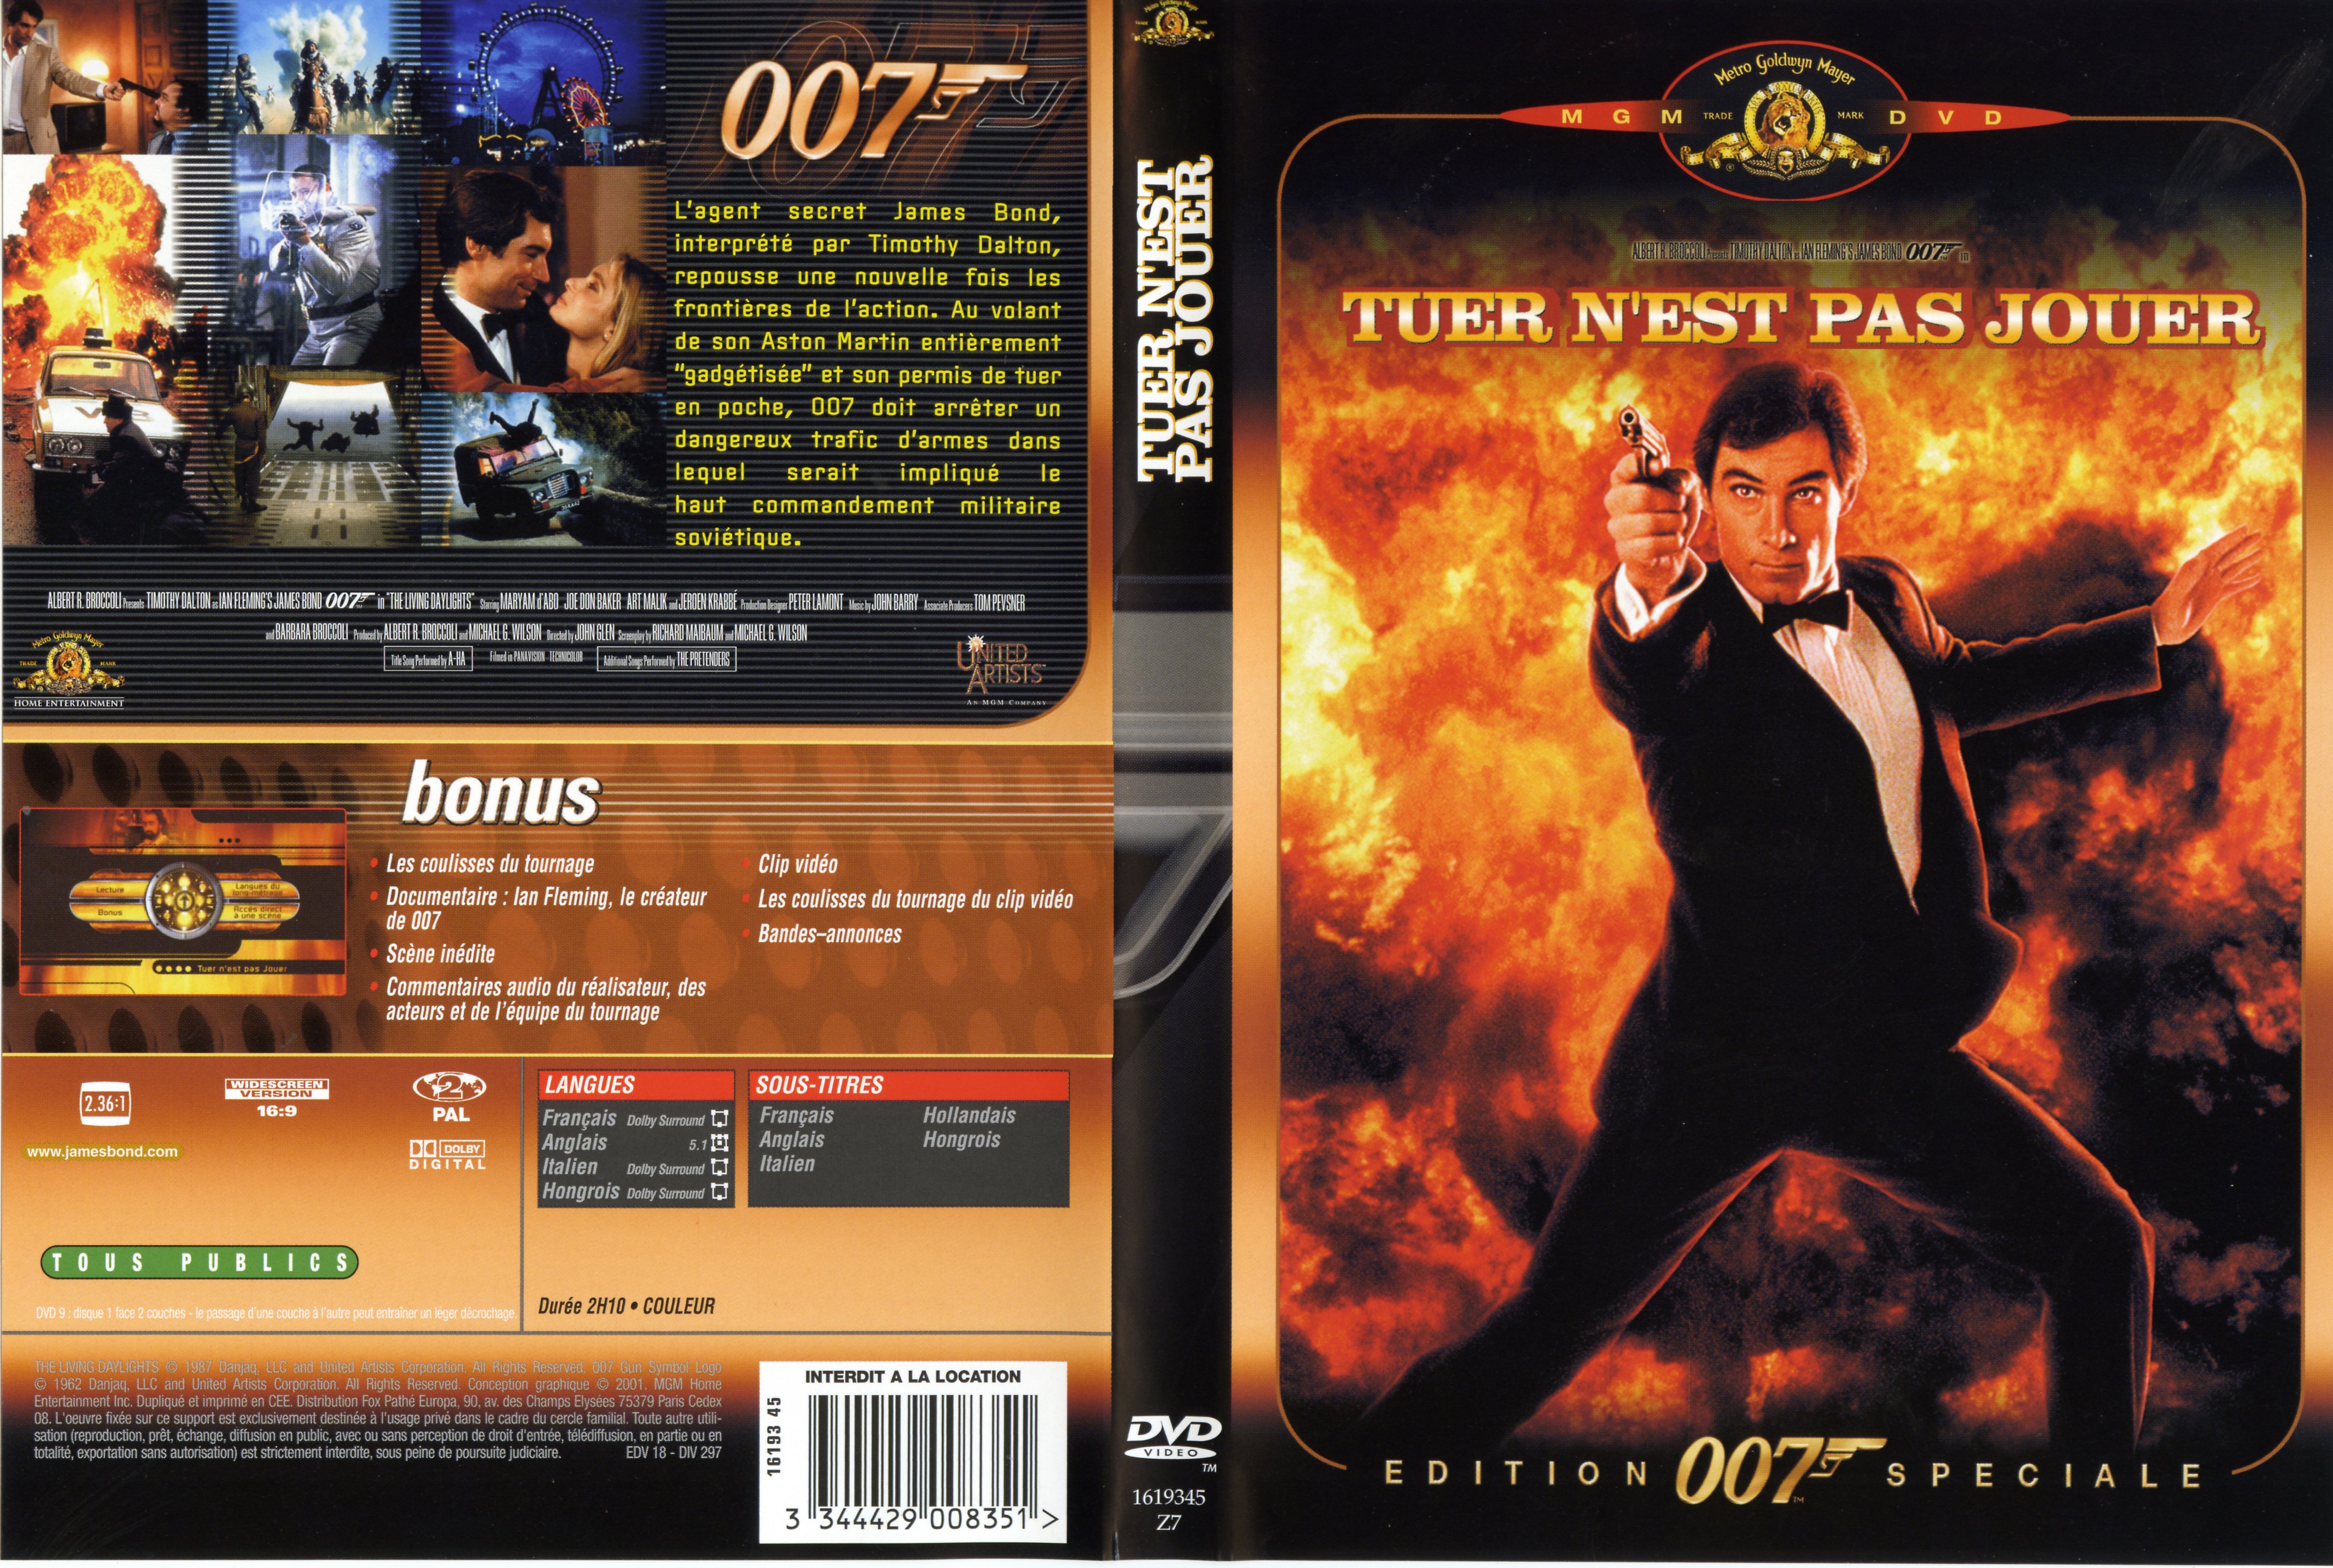 Jaquette DVD de James Bond 007 Tuer n'est pas jouer - Cinéma Passion